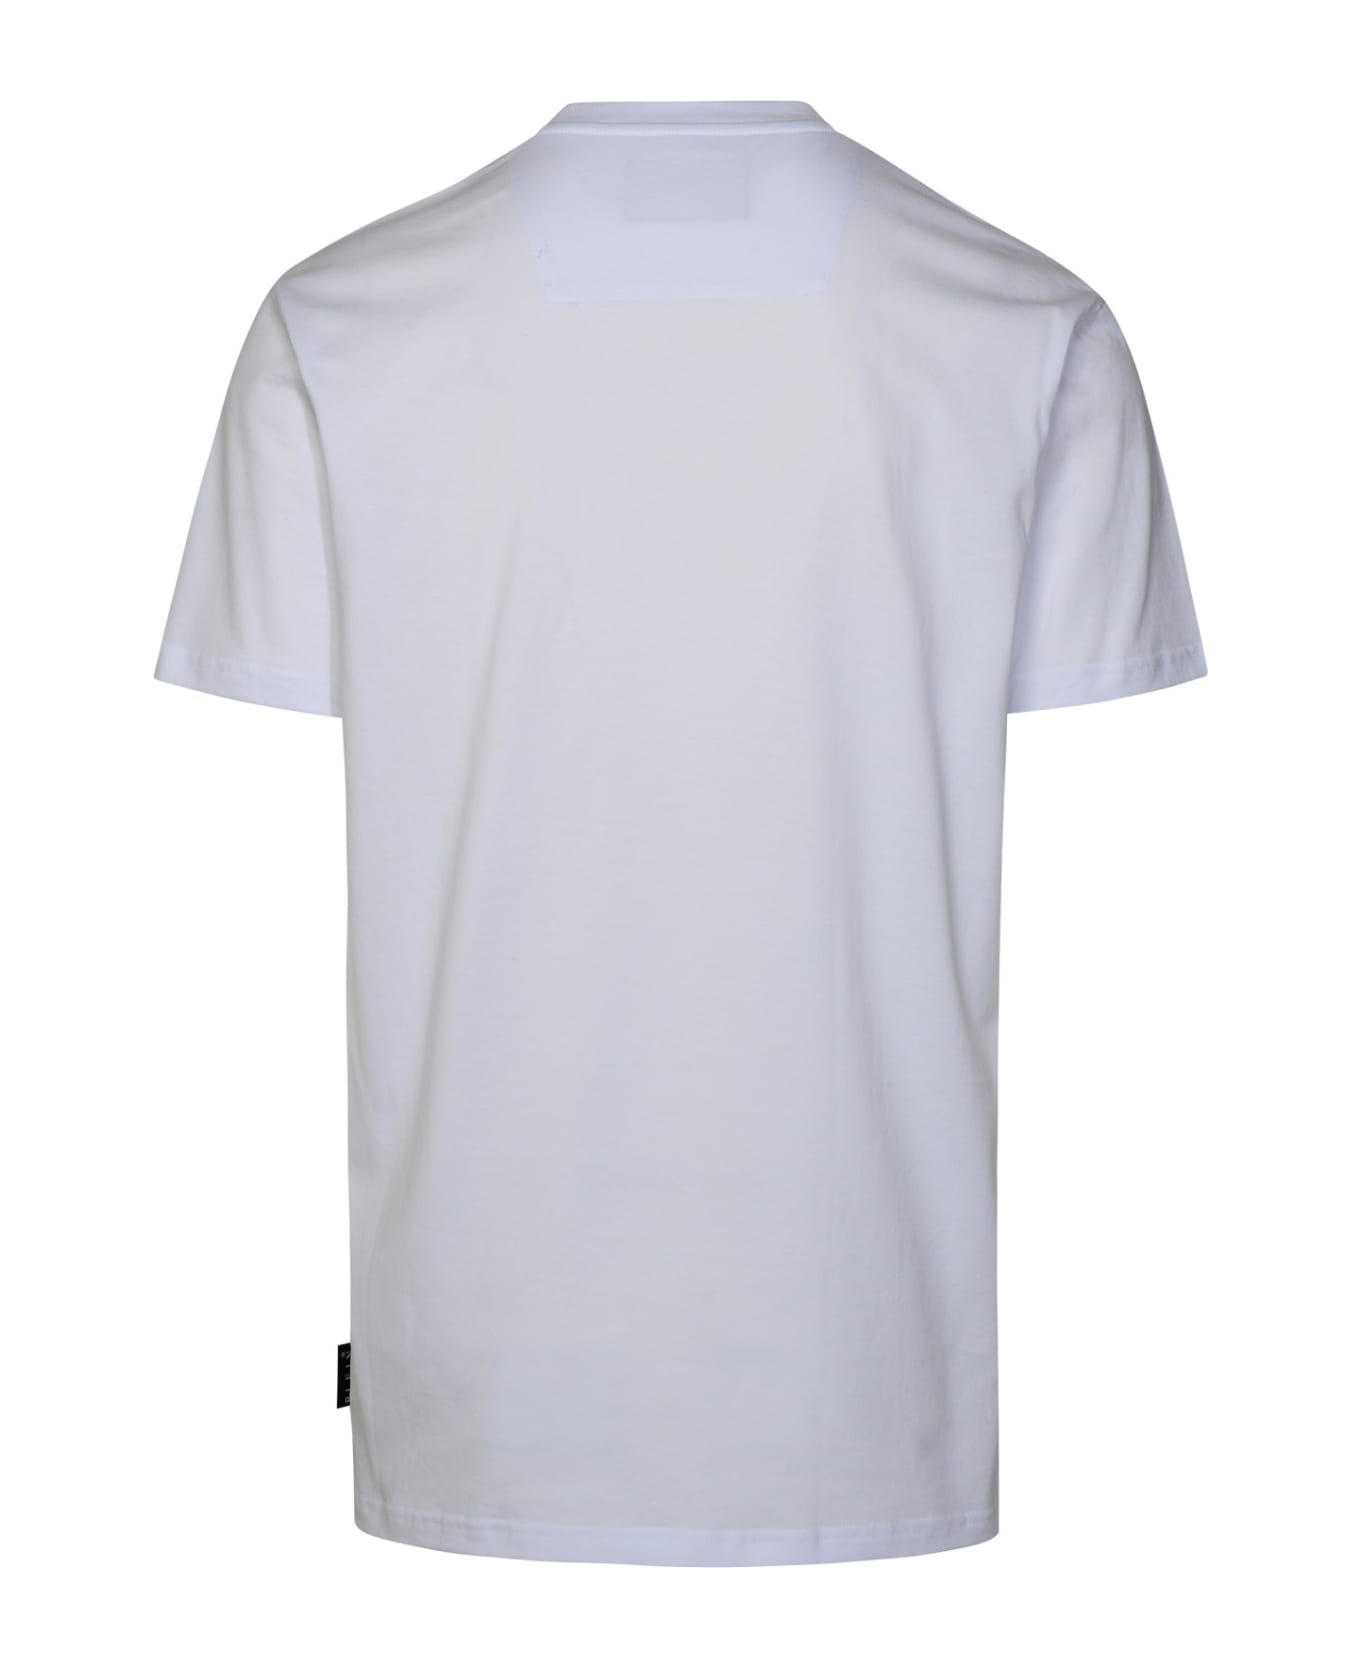 Philipp Plein White Cotton T-shirt - White シャツ